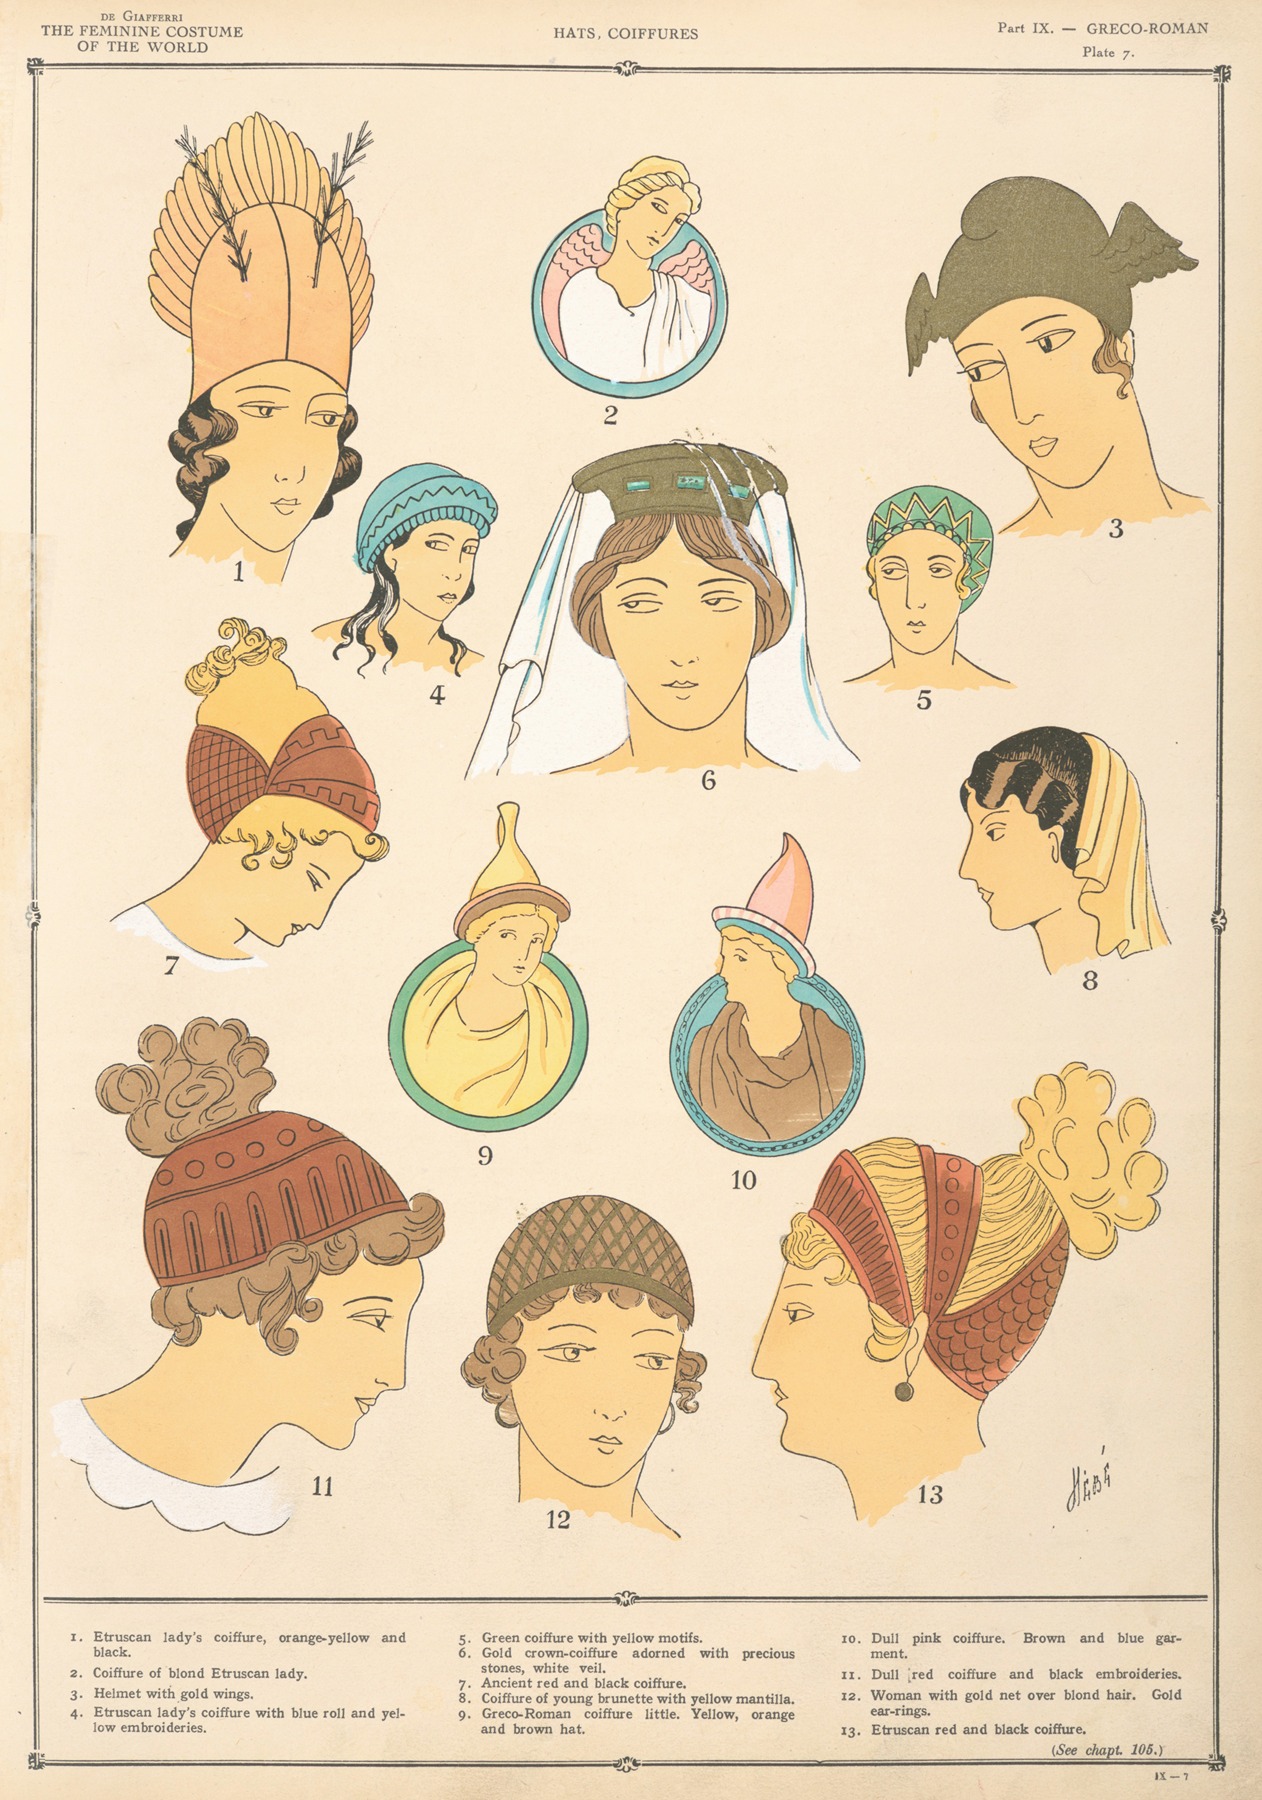 Paul Louis de Giafferri - Greco-Roman – Hats, coiffures